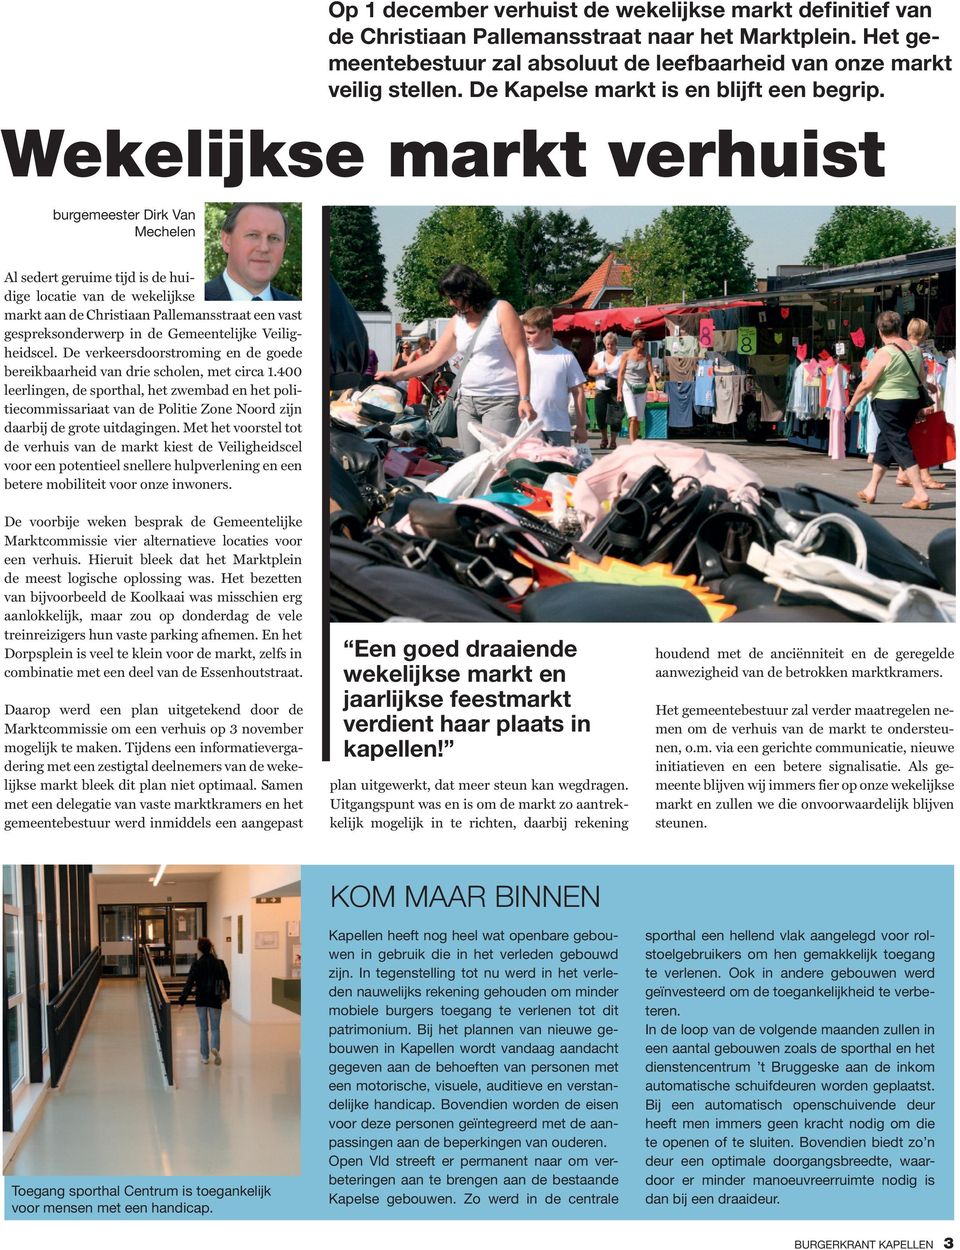 Wekelijkse markt verhuist burgemeester Dirk Van Mechelen Al sedert geruime tijd is de huidige locatie van de wekelijkse markt aan de Christiaan Pallemansstraat een vast gespreksonderwerp in de